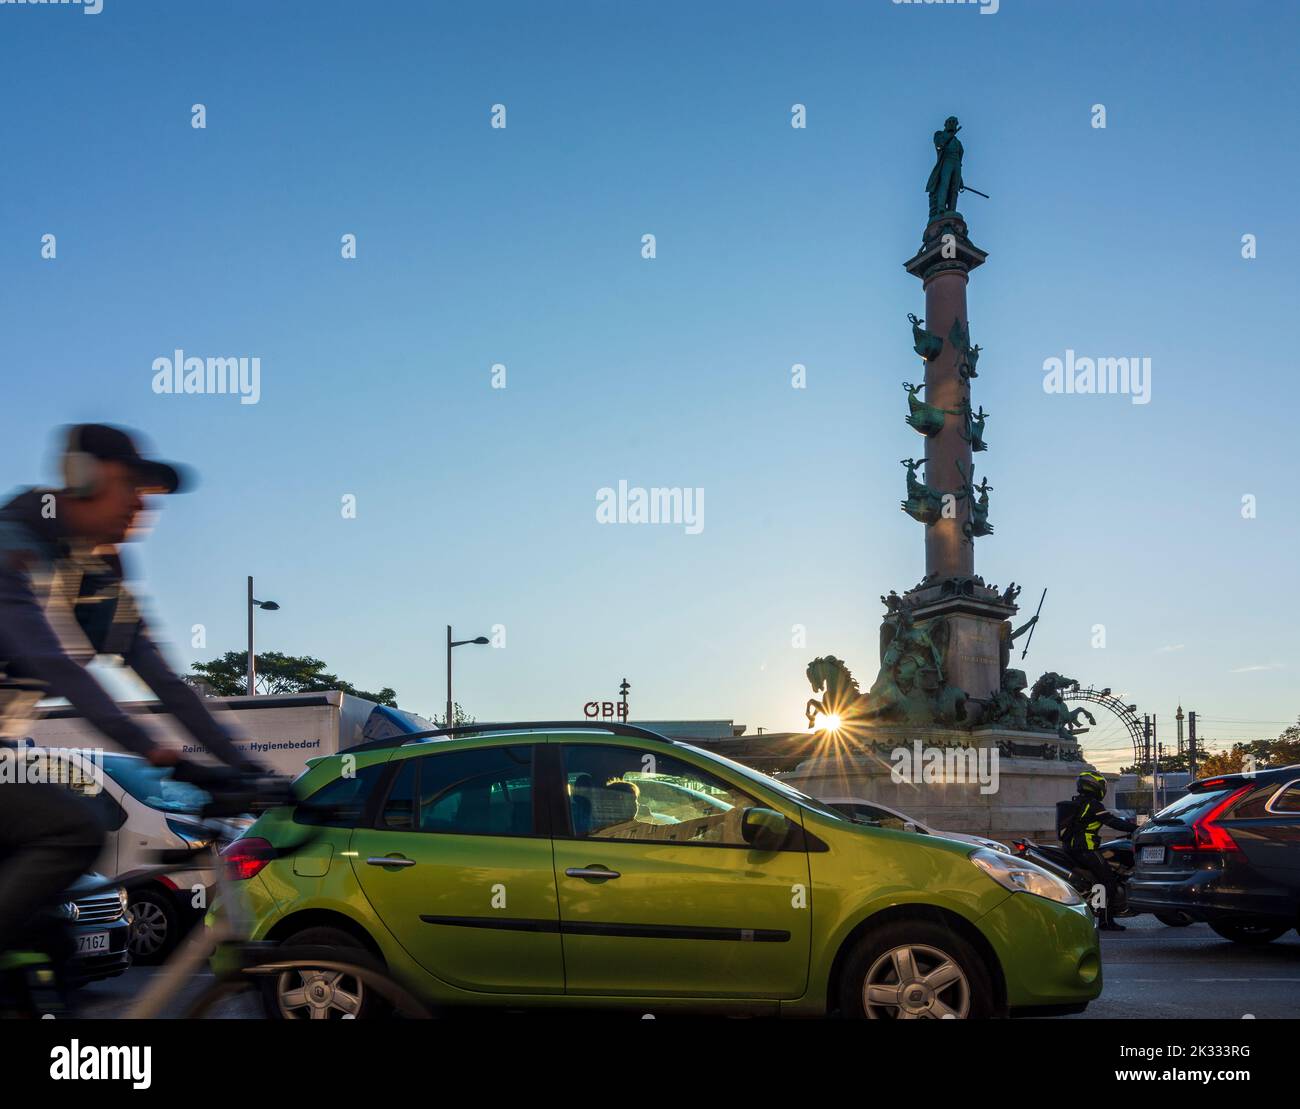 Wien, Vienna: square Praterstern,  Wilhelm von Tegetthoff monument, cars, cyclist, sunrise in 02. Leopoldstadt, Wien, Austria Stock Photo